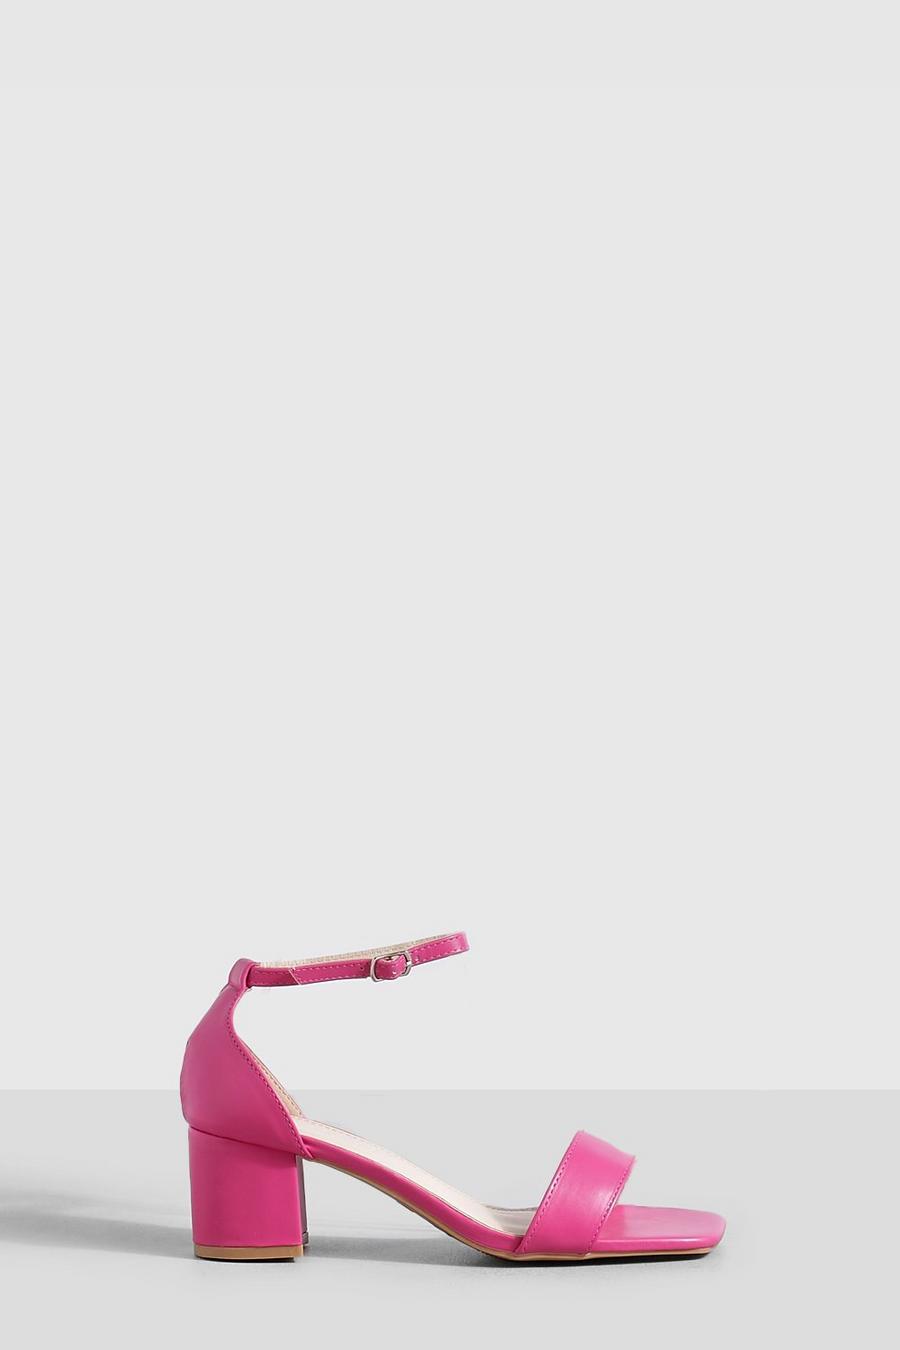 Tacones gruesos bajos de 2 partes minimalistas, Pink rosa image number 1